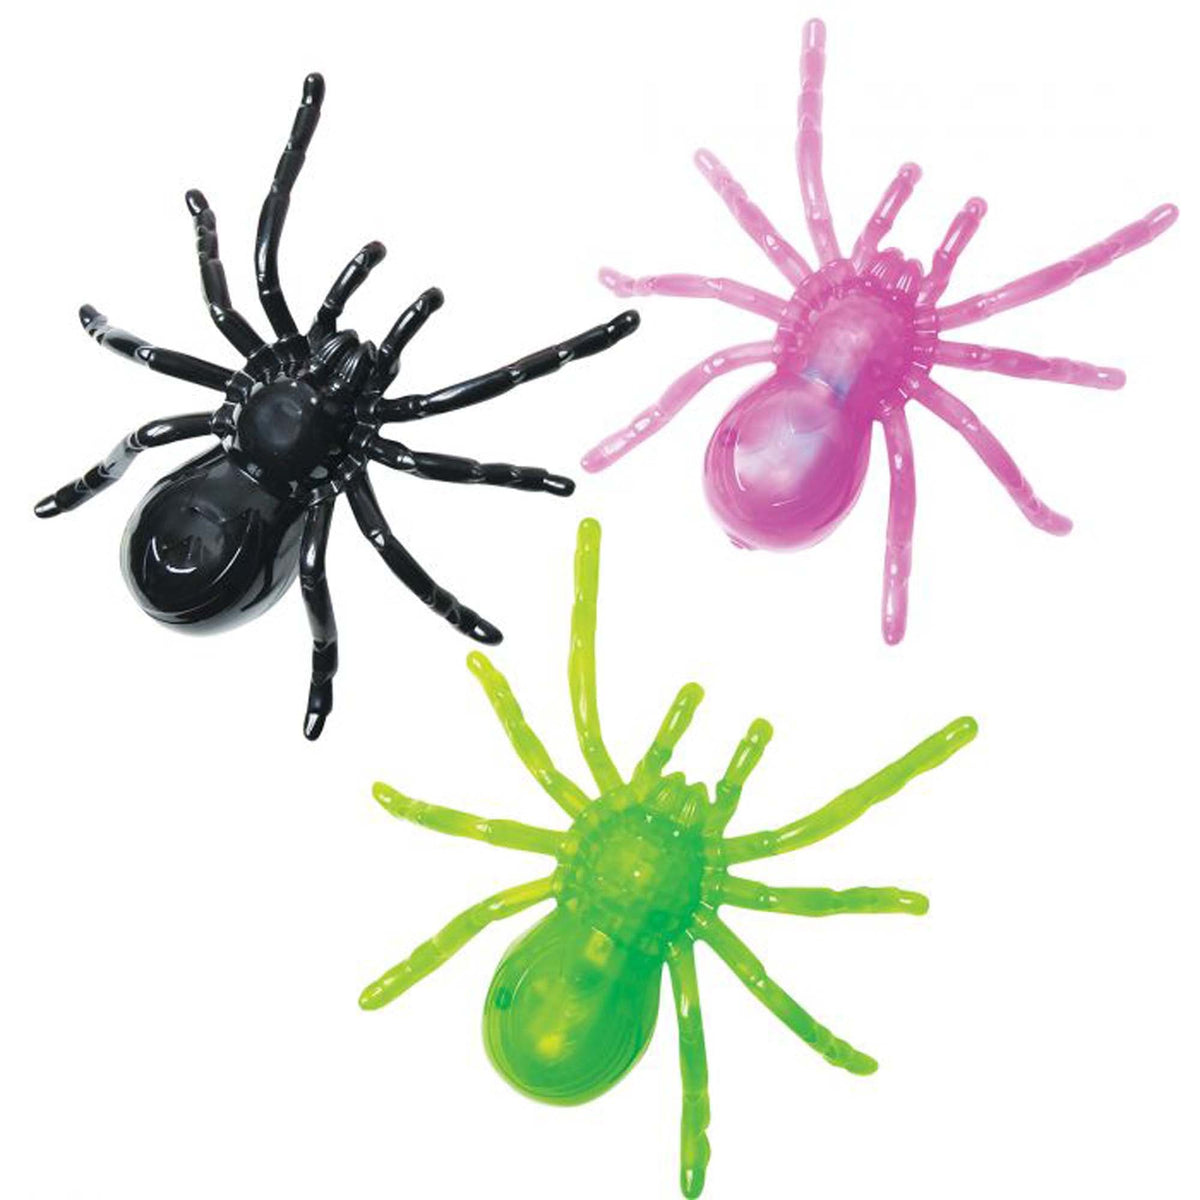 FUN WORLD Halloween Glow Light-Up Spider, Assortment, 1 Count 071765147859